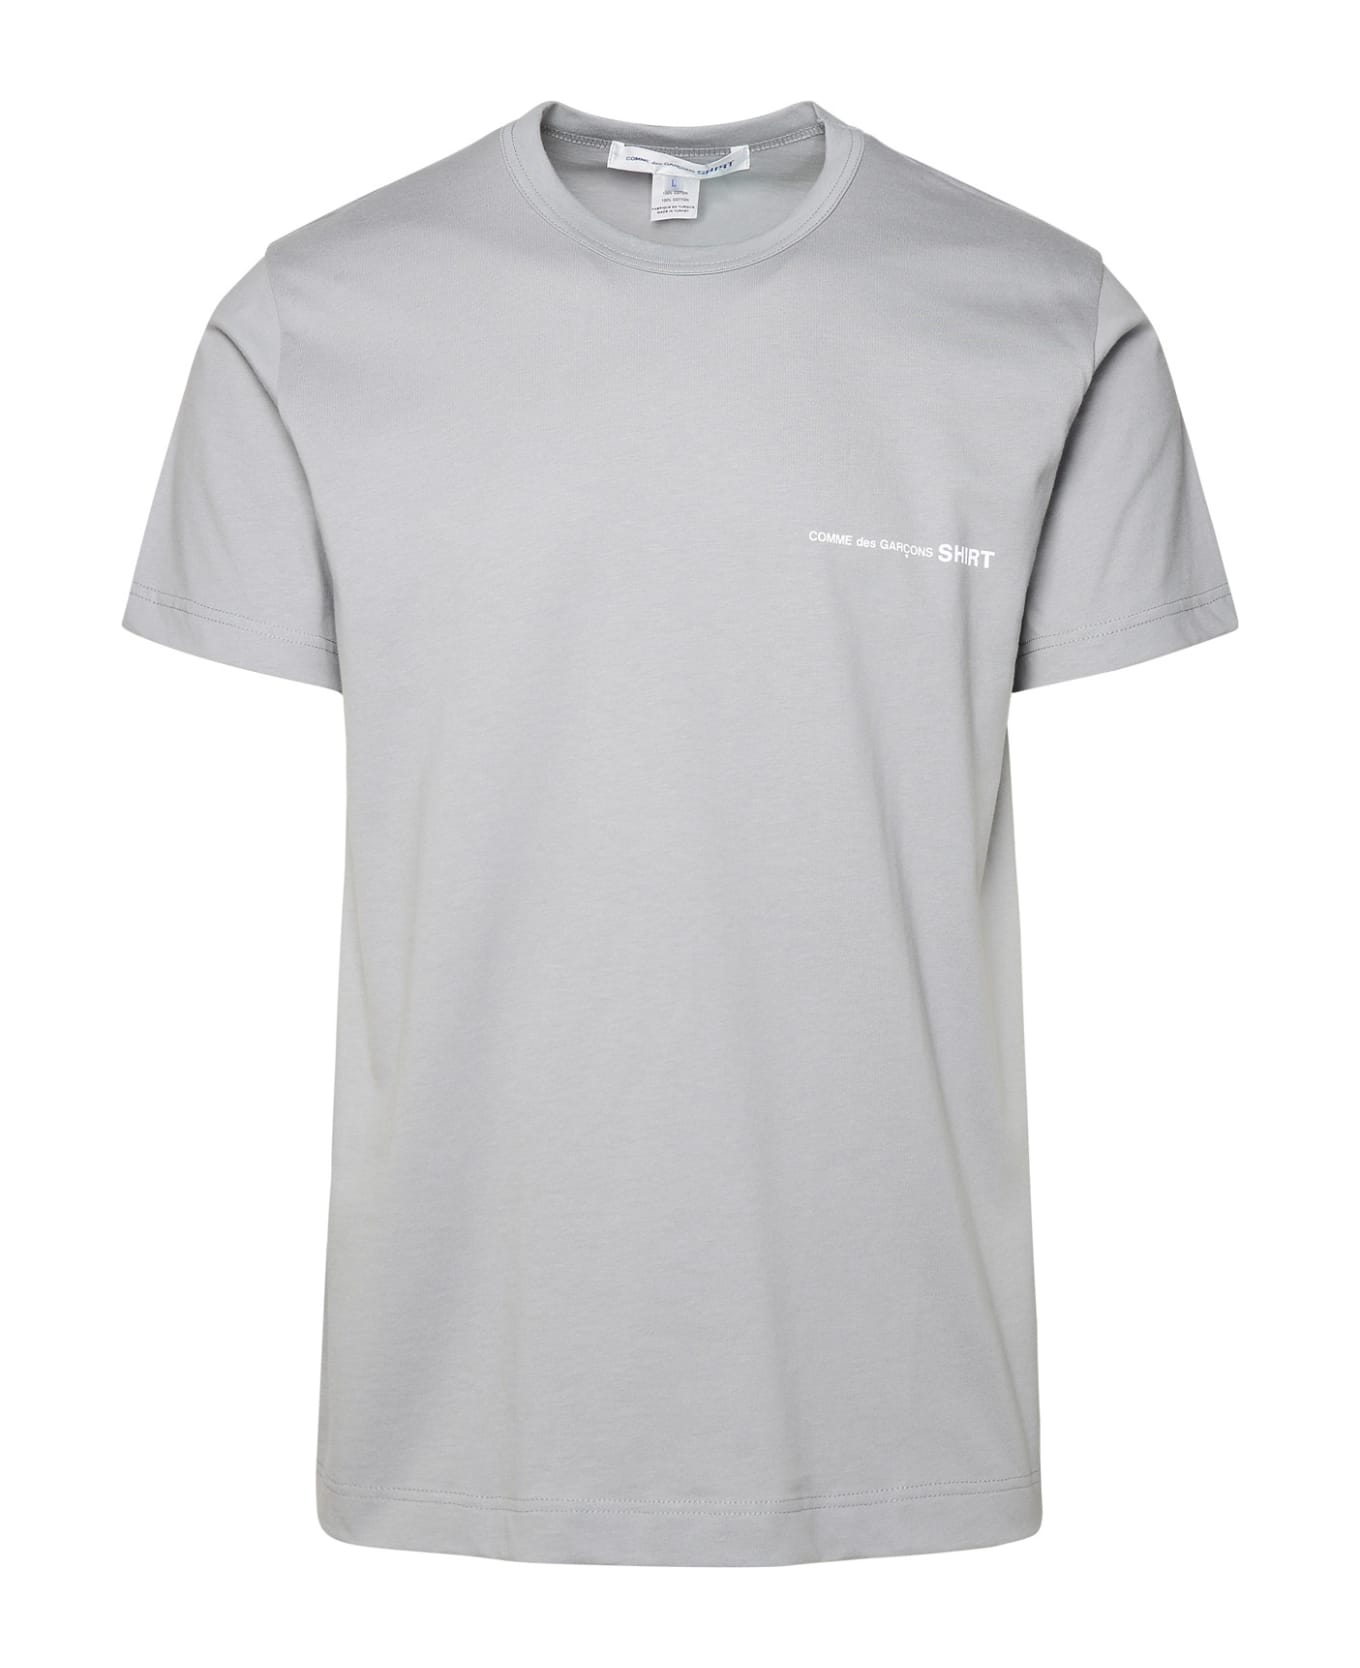 Comme des Garçons Shirt Gray Cotton T-shirt - Grey シャツ